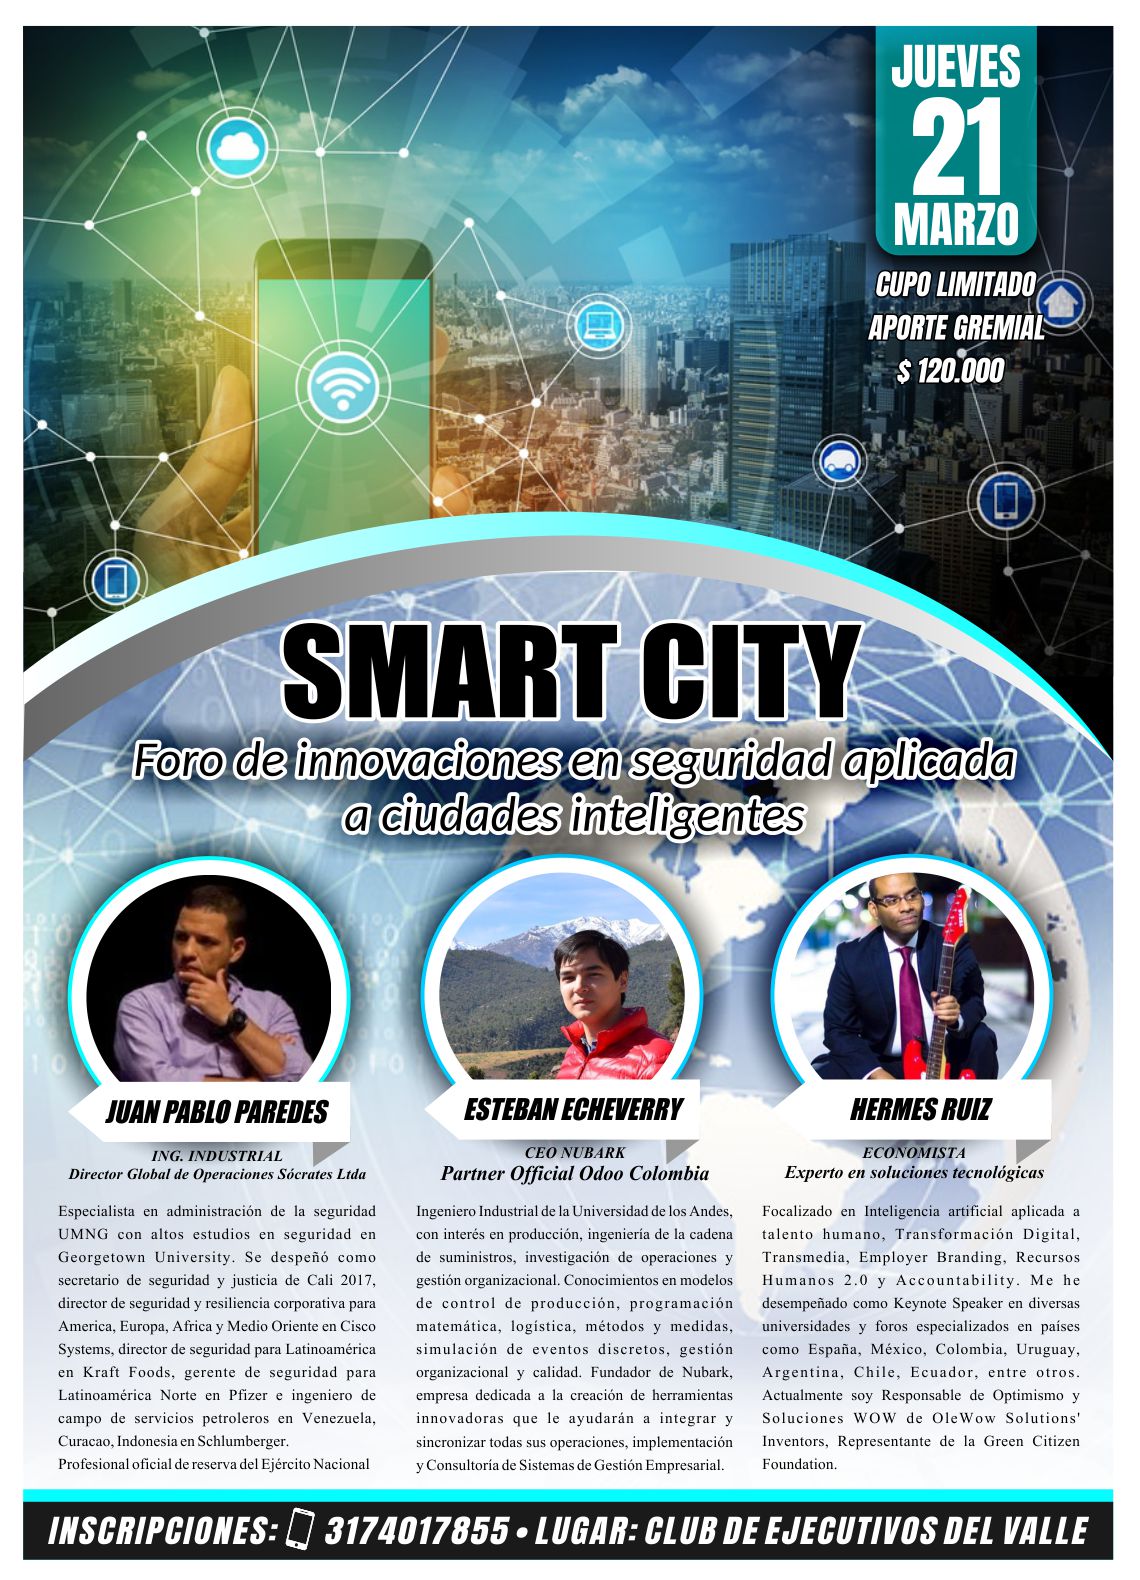 smart city cali ponentes